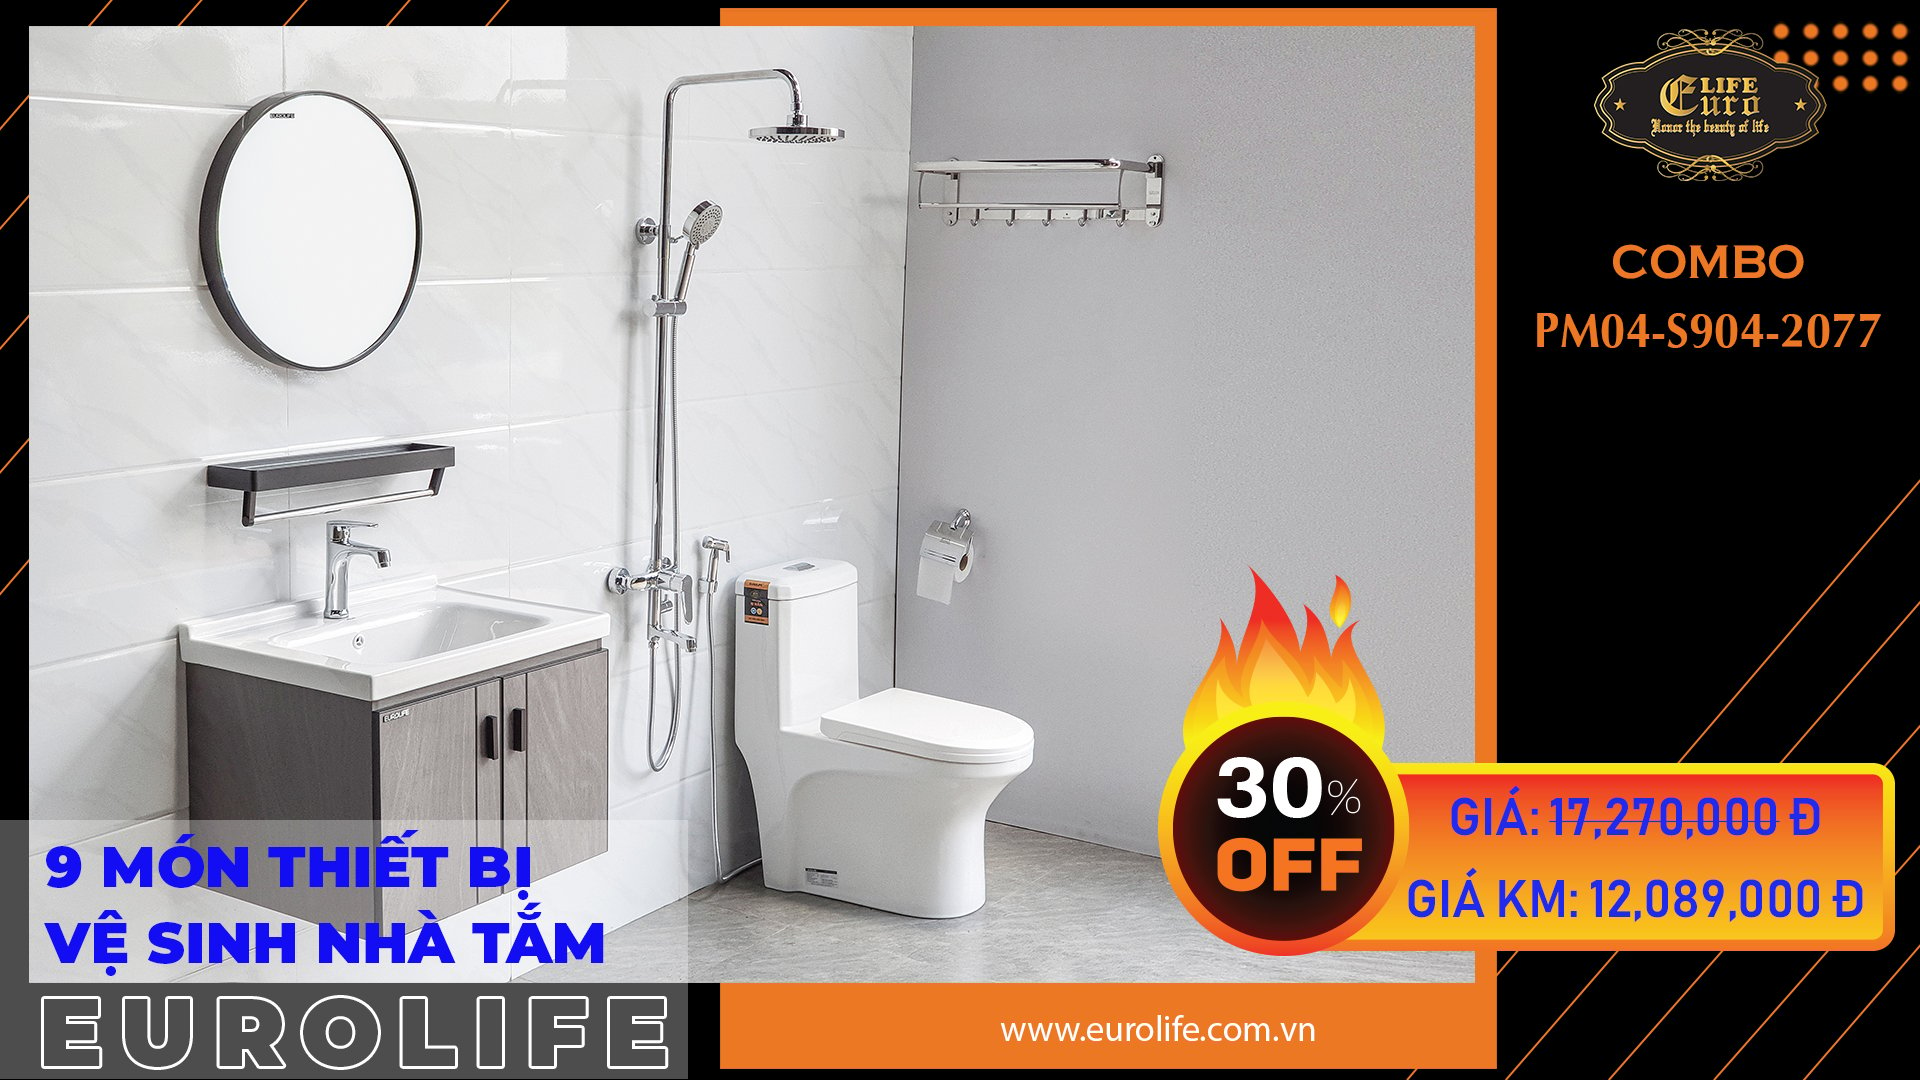 Trọn bộ thiết bị vệ sinh nhà tắm Eurolife CB PM04-904-2077 – SEN ...